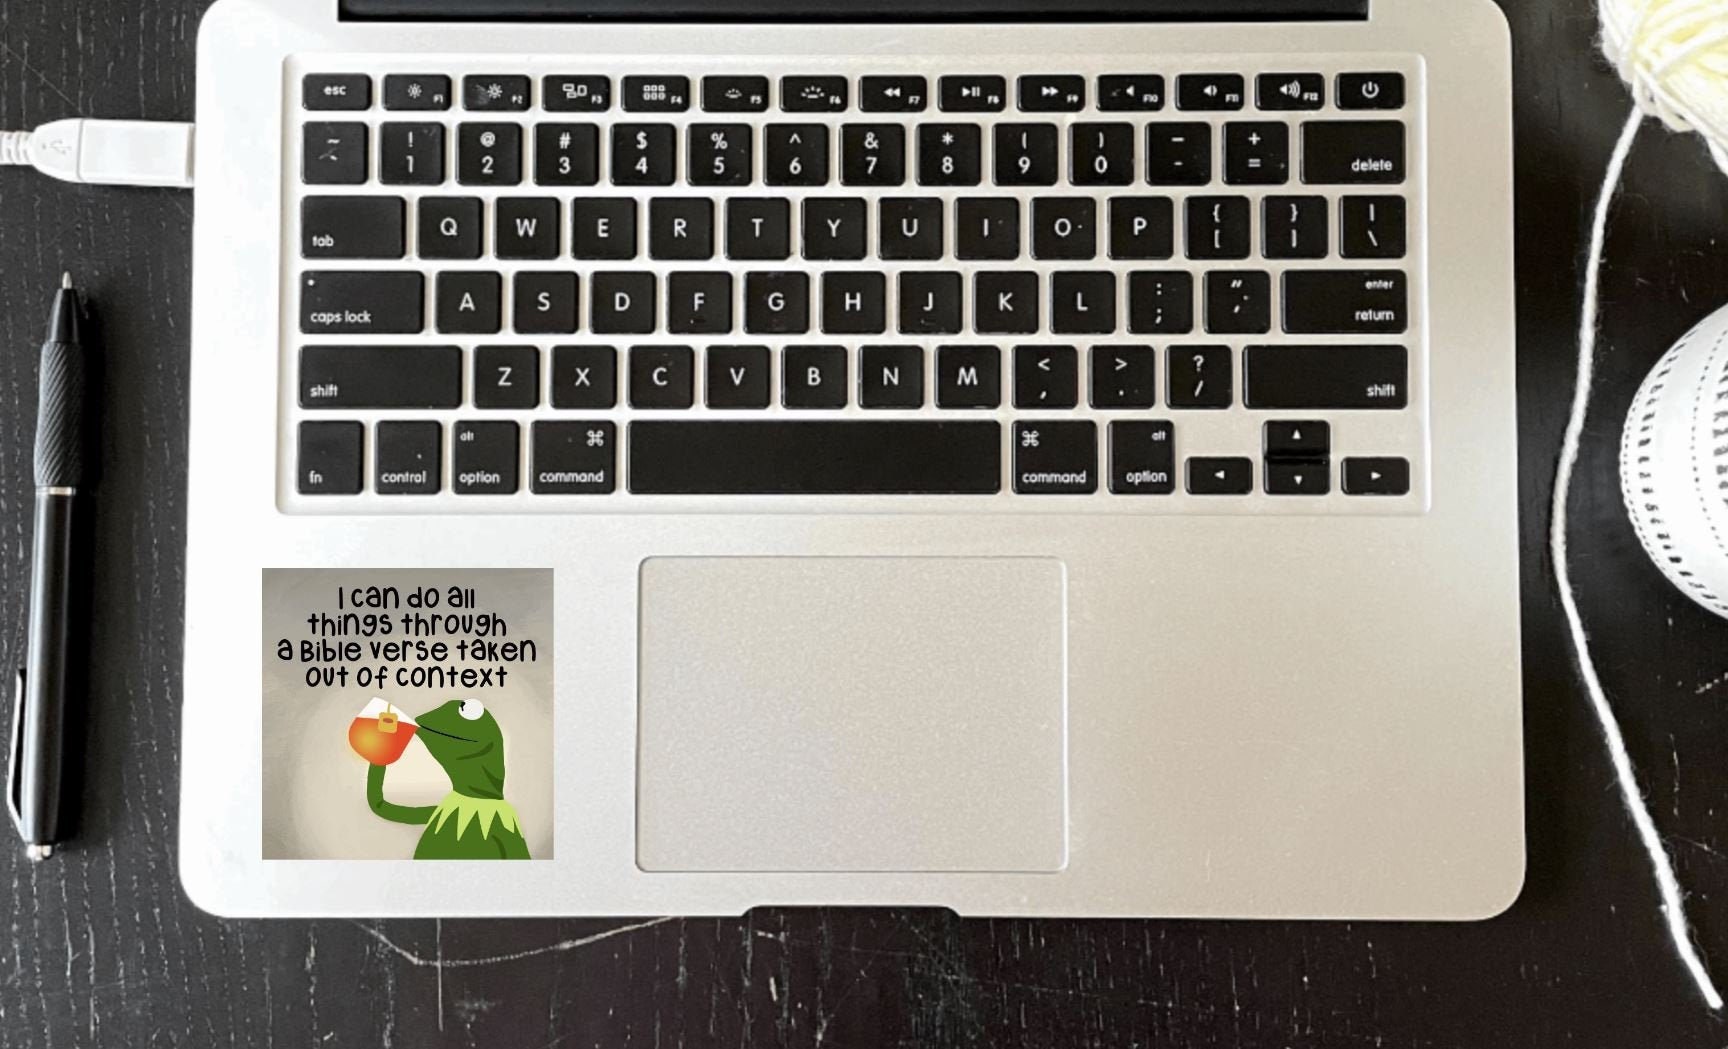 Keyboard Meme Stickers for Sale